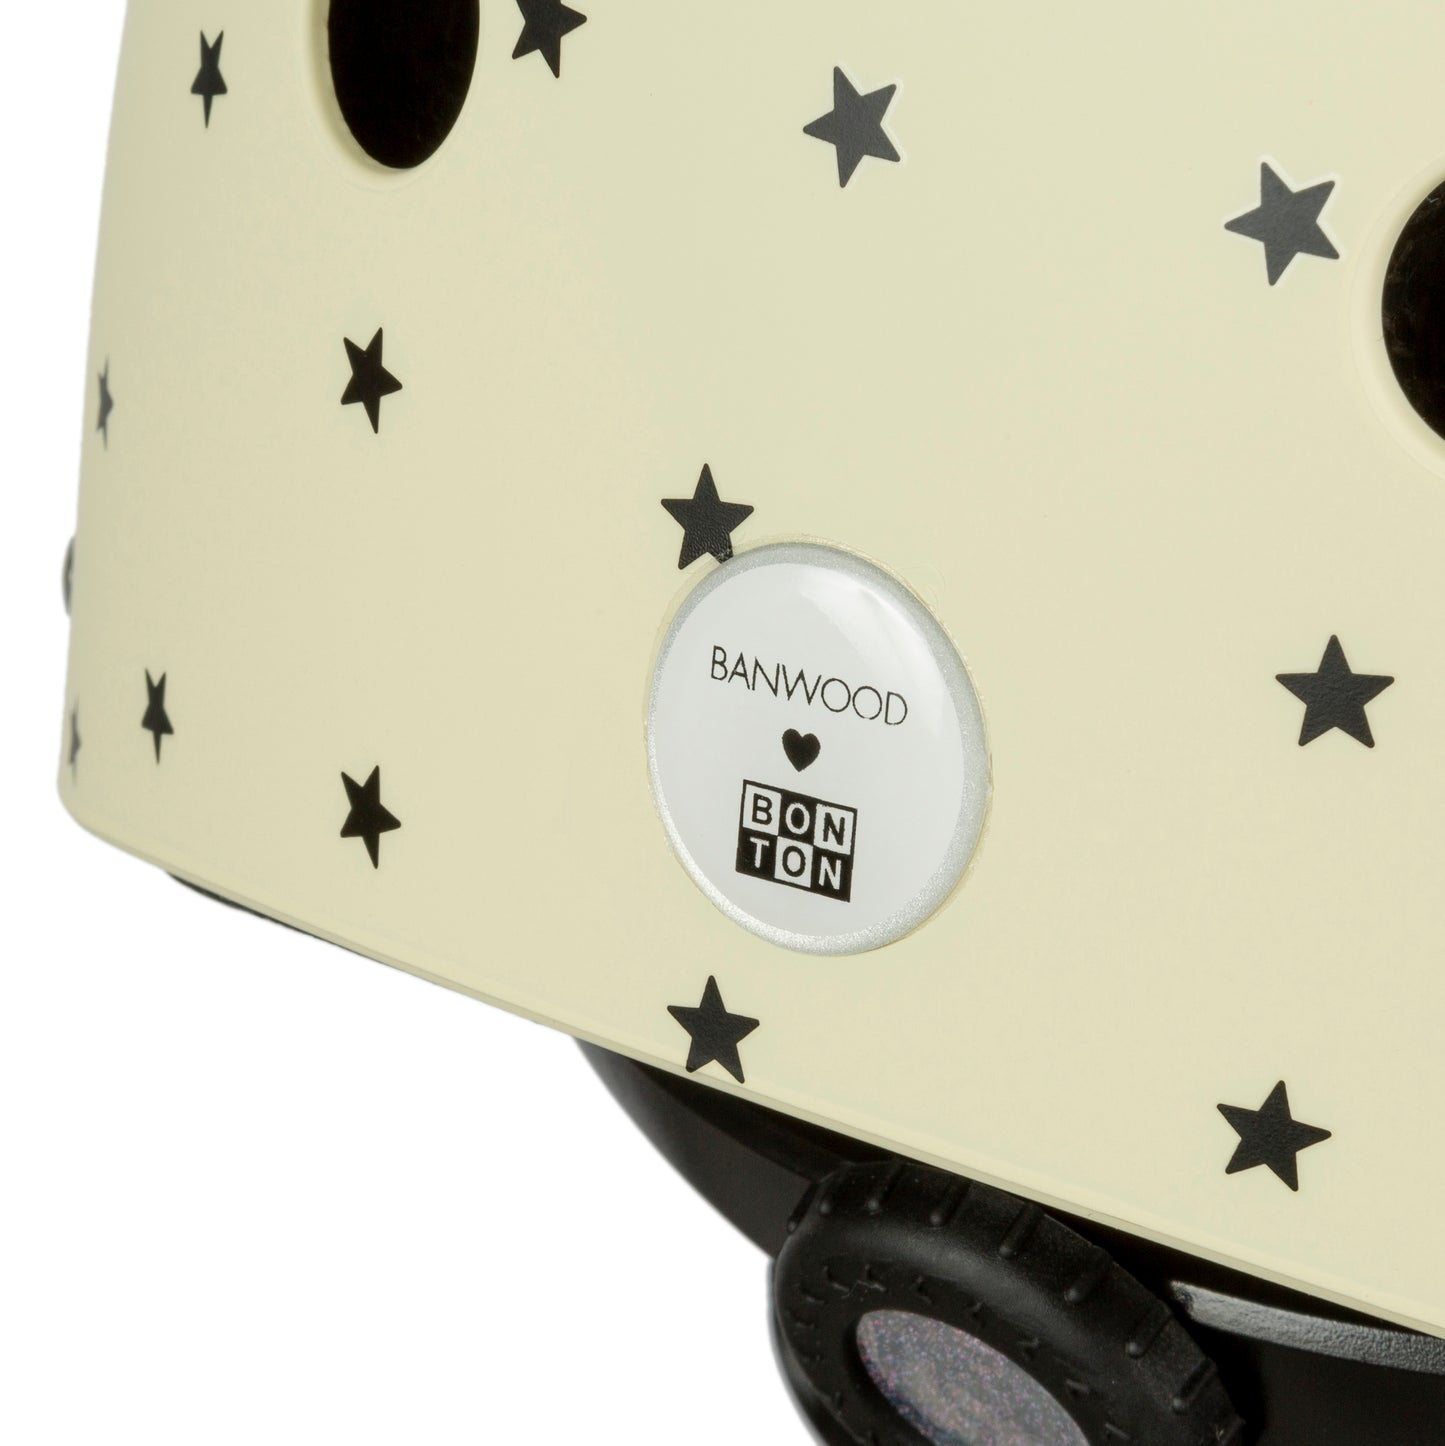 Banwood Helmet Bonton R - Age 3-7 [48-52cm]